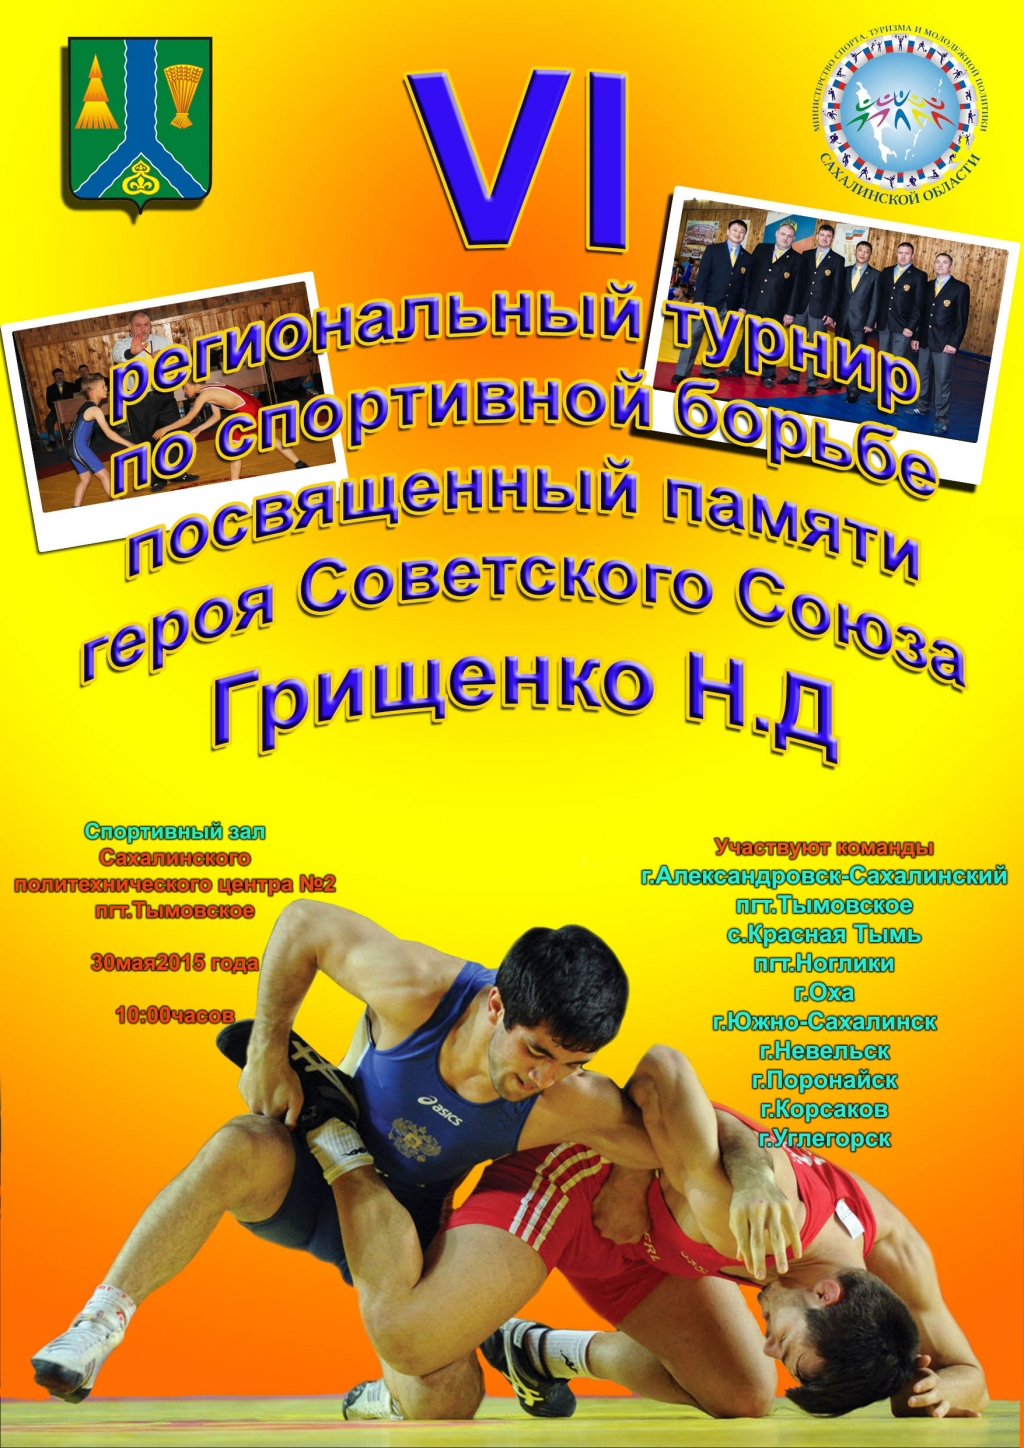 VI региональный турнир по спортивной борьбе пройдет на Сахалине 